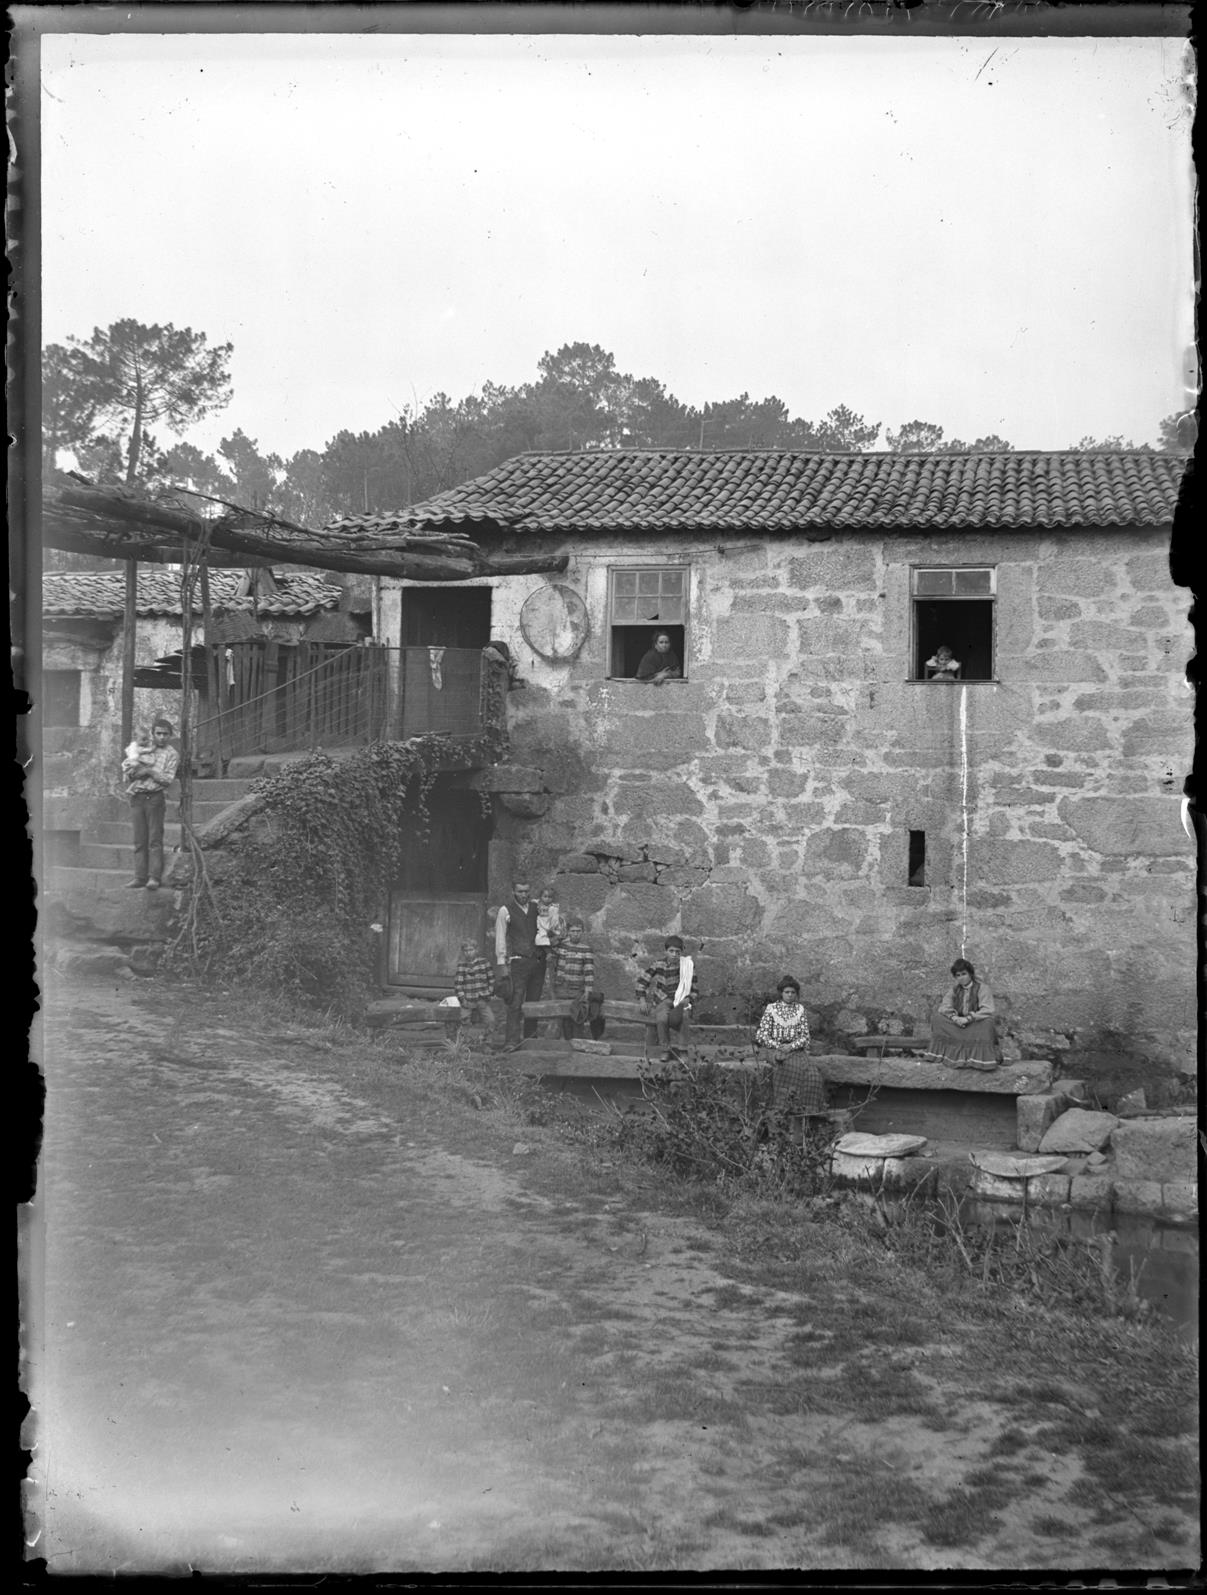 Uma família em frente a uma casa de lavoura